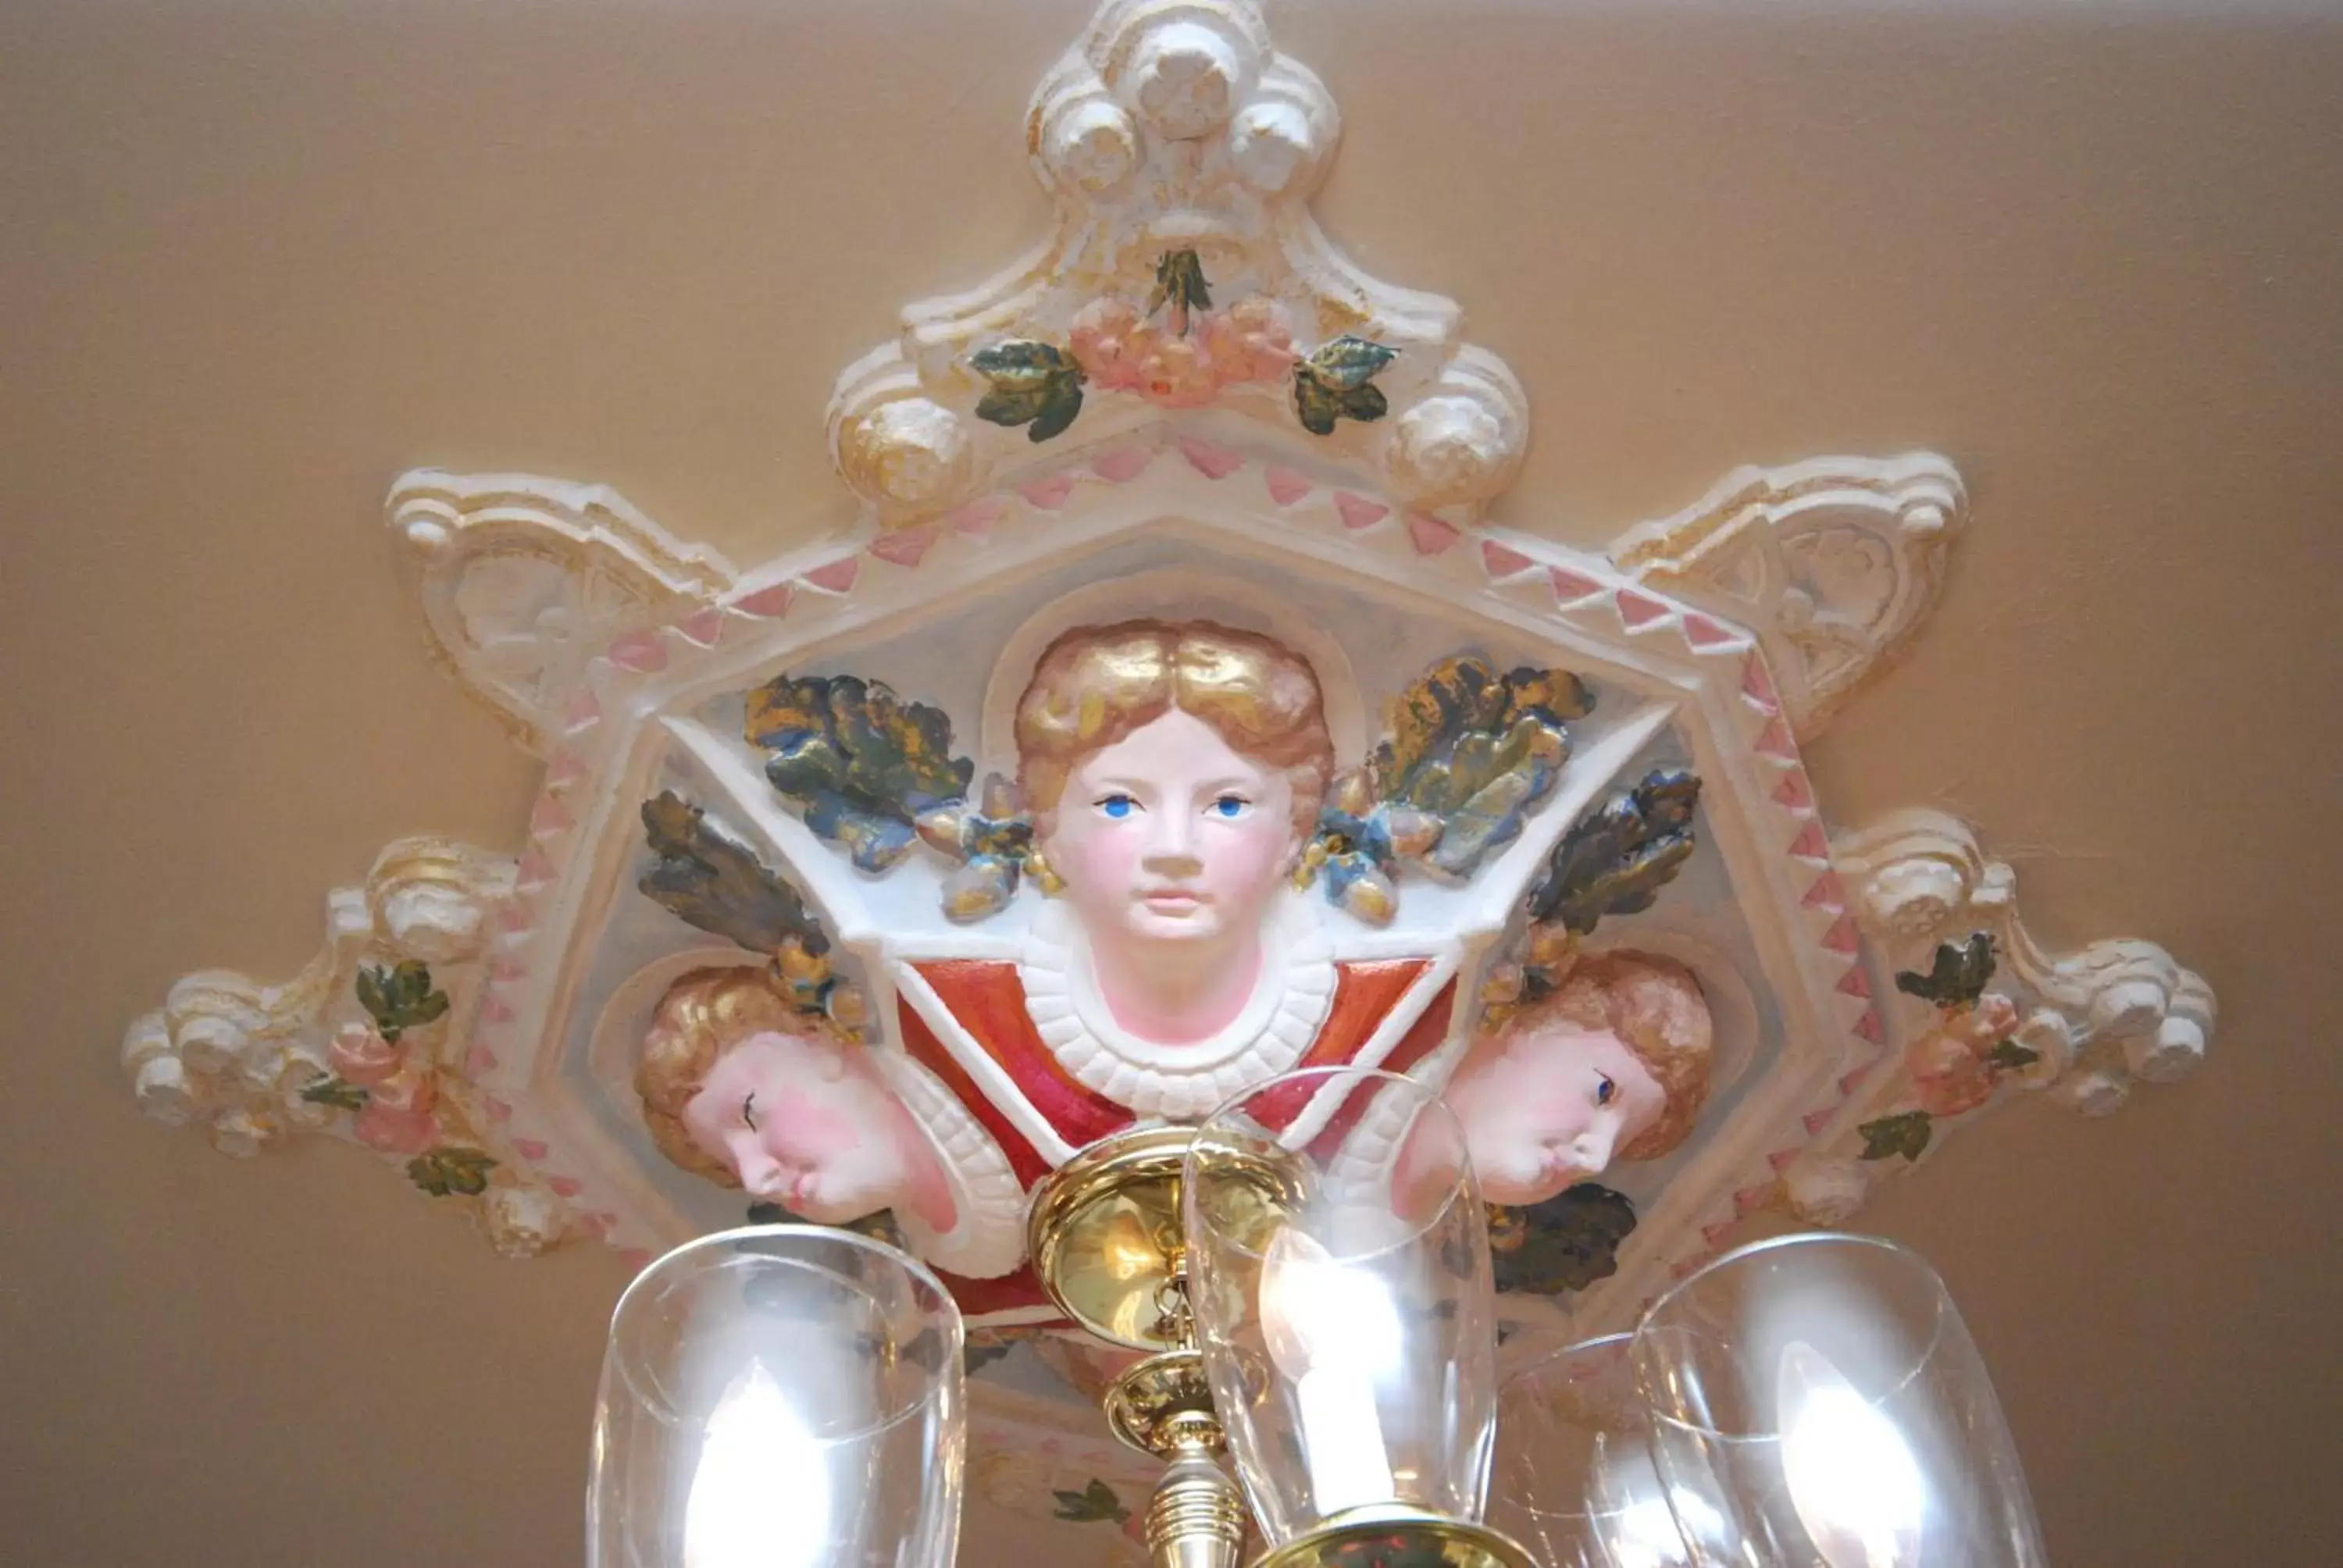 Decorative detail in Queen Anne